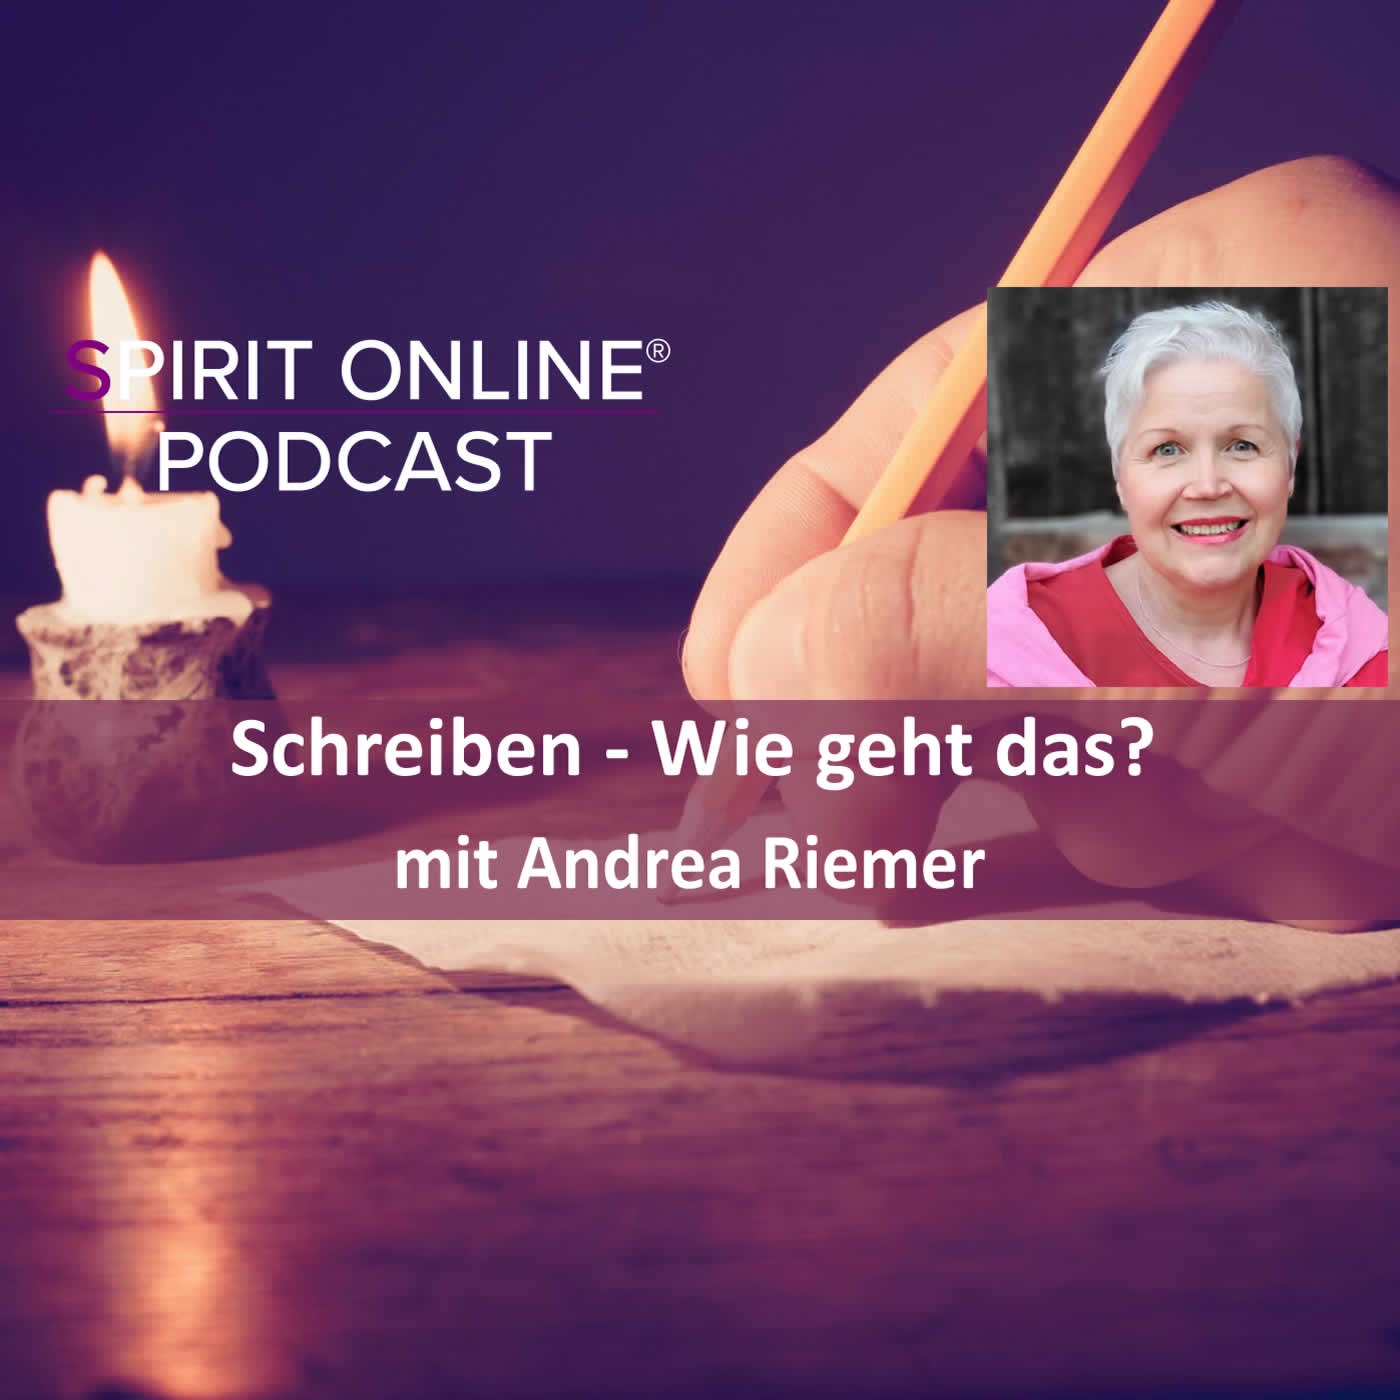 Schreiben - Wie geht das? Podcast mit Andrea